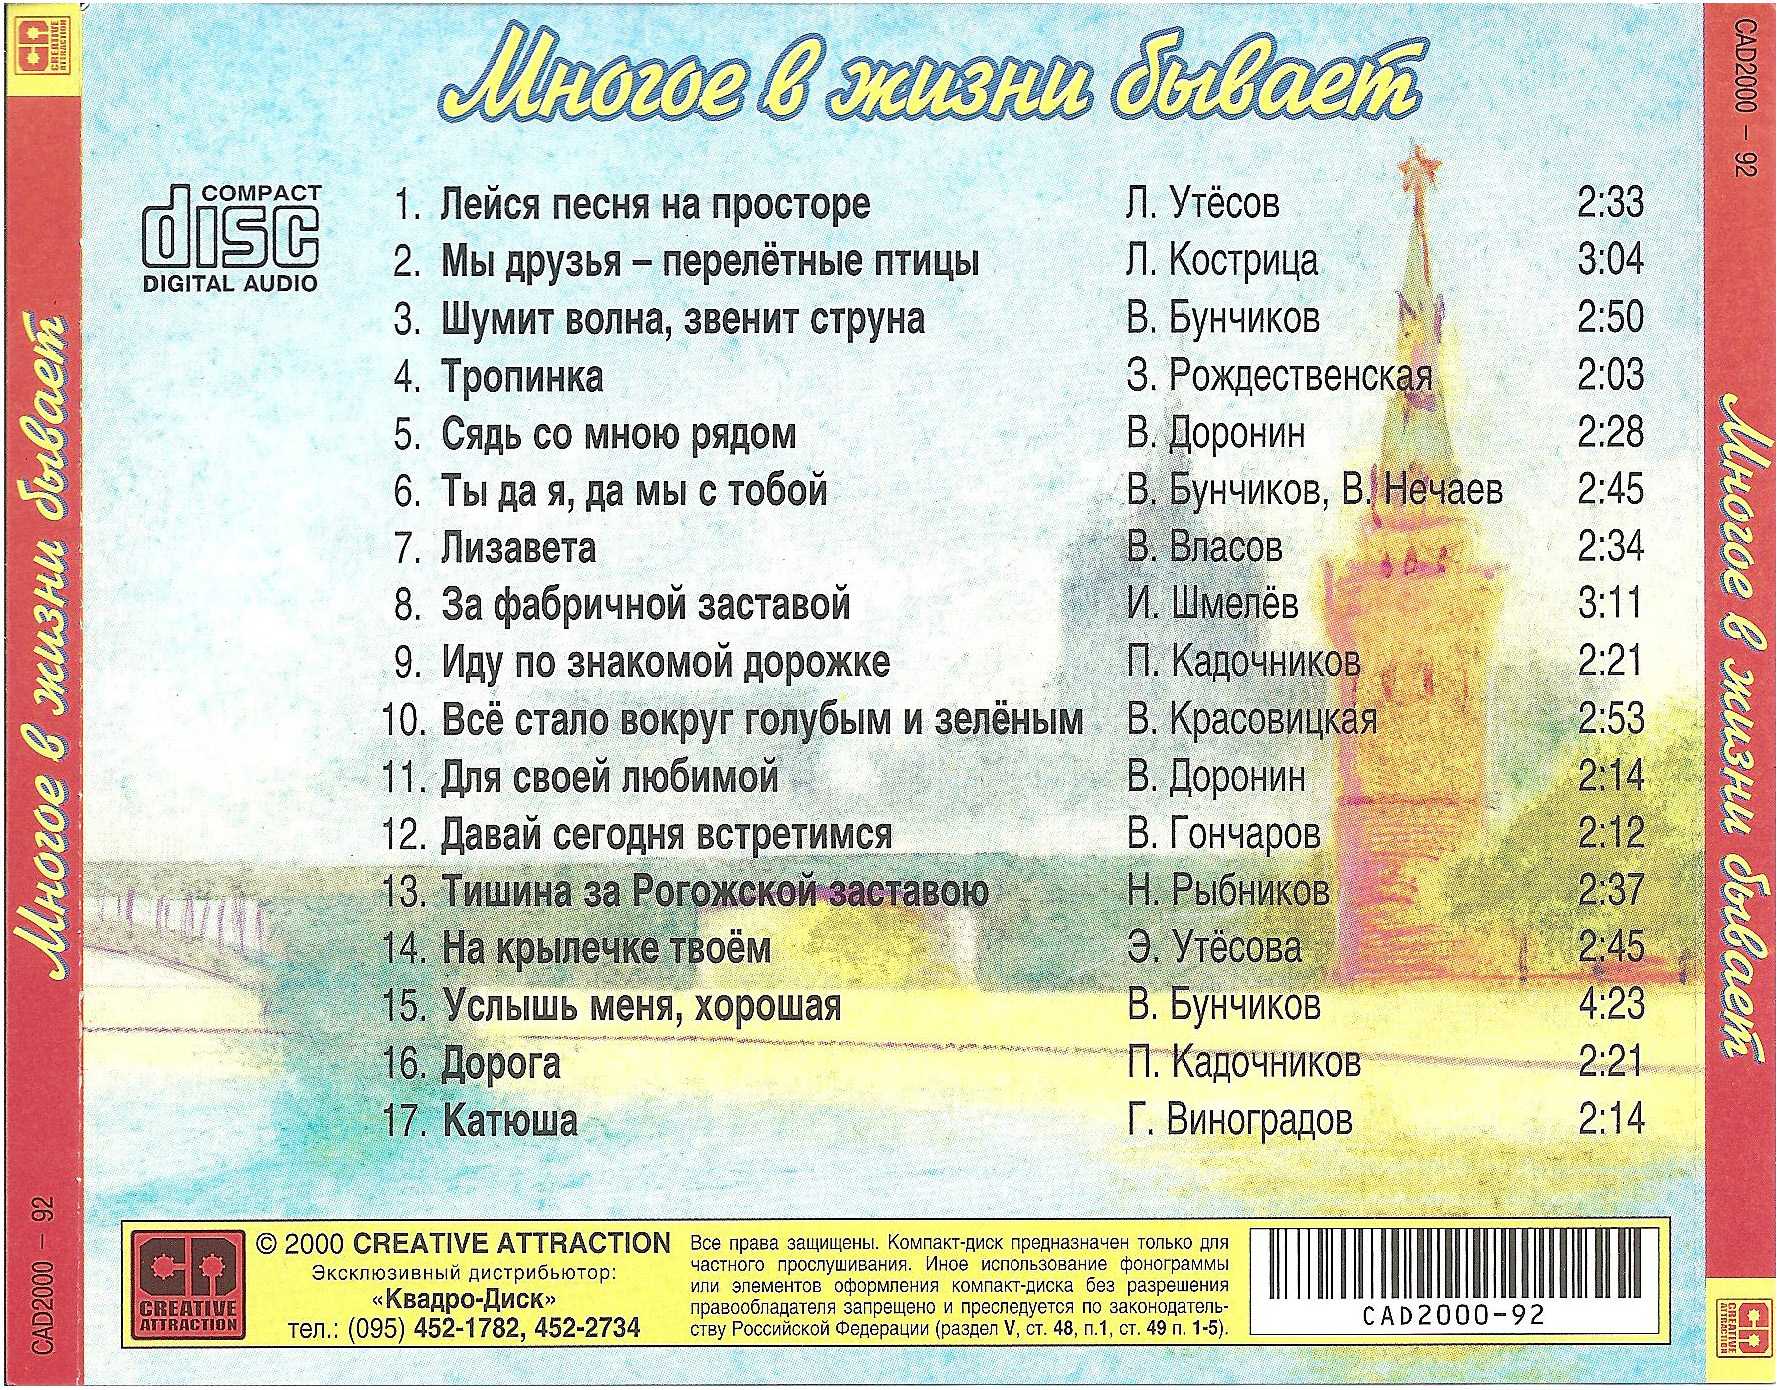 Популярные песни которые знают все. Песни список. Русские песни список. Названия известных песен. Популярные советские песни список.